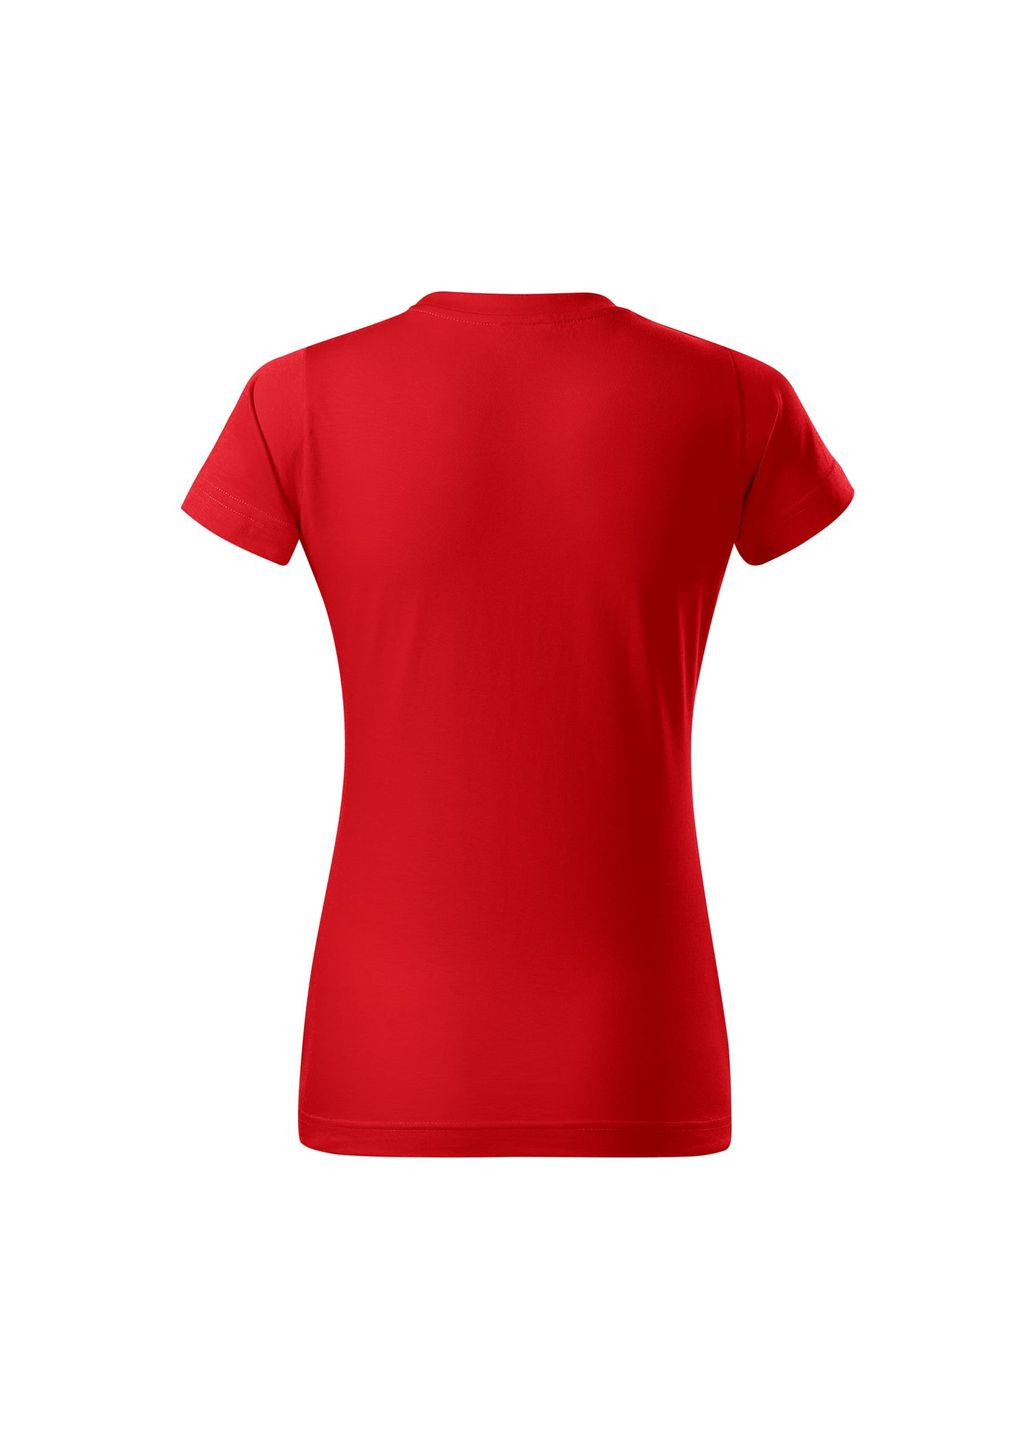 Красная всесезон футболка женская хлопковая однотонная красная 134-07 с коротким рукавом Malfini Basic